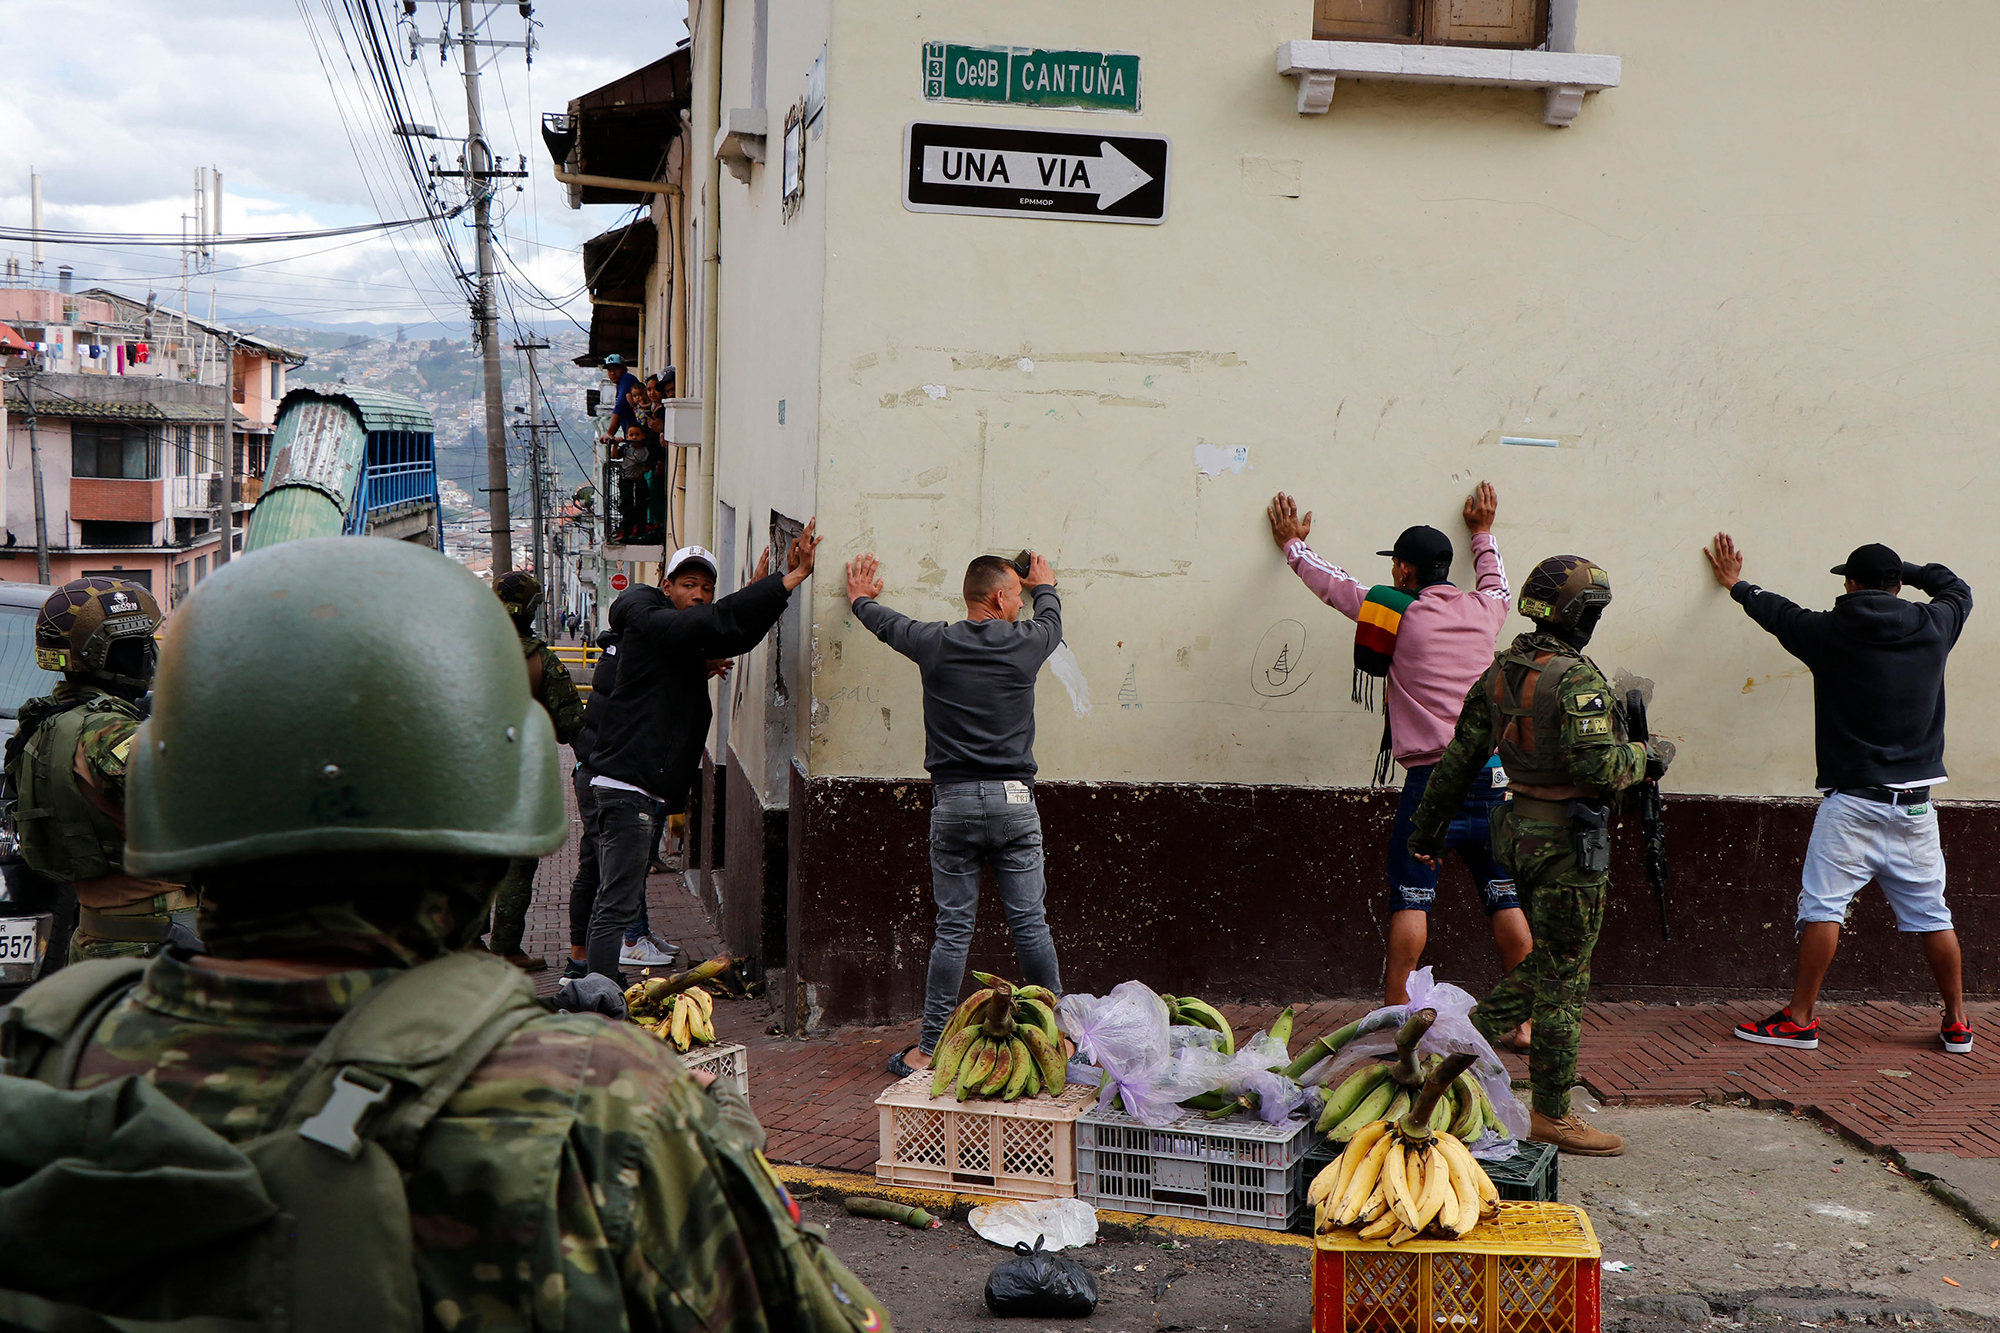 Soldaten überprüfen in Quito mehrere Verdächtige (Bild: Stringer/AFP)